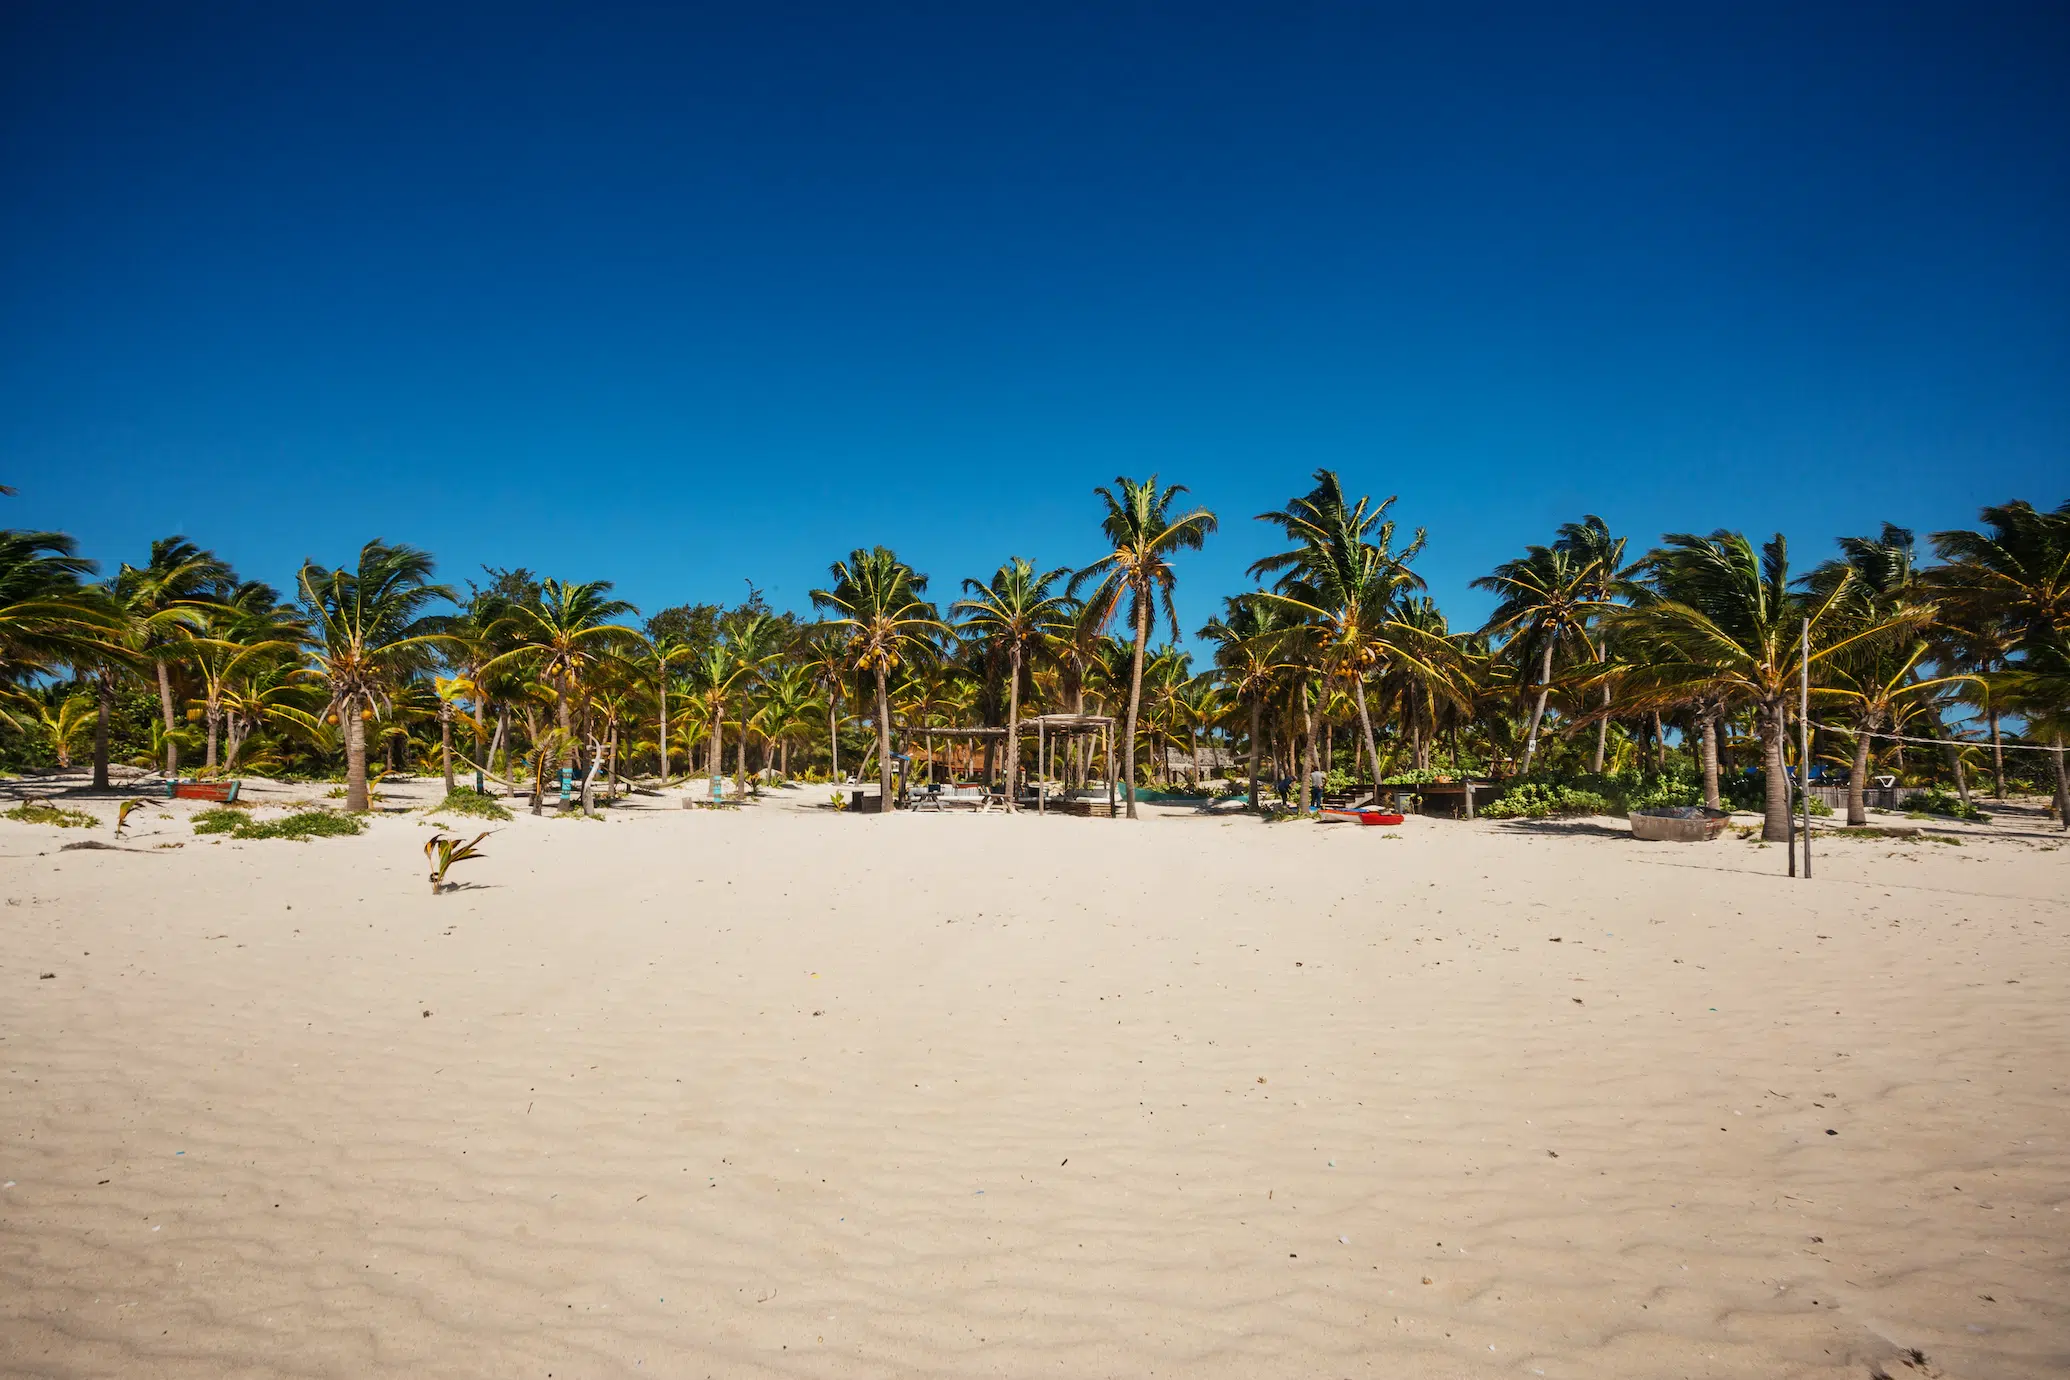 The beach at Sian Ka'an, Quintana Roo